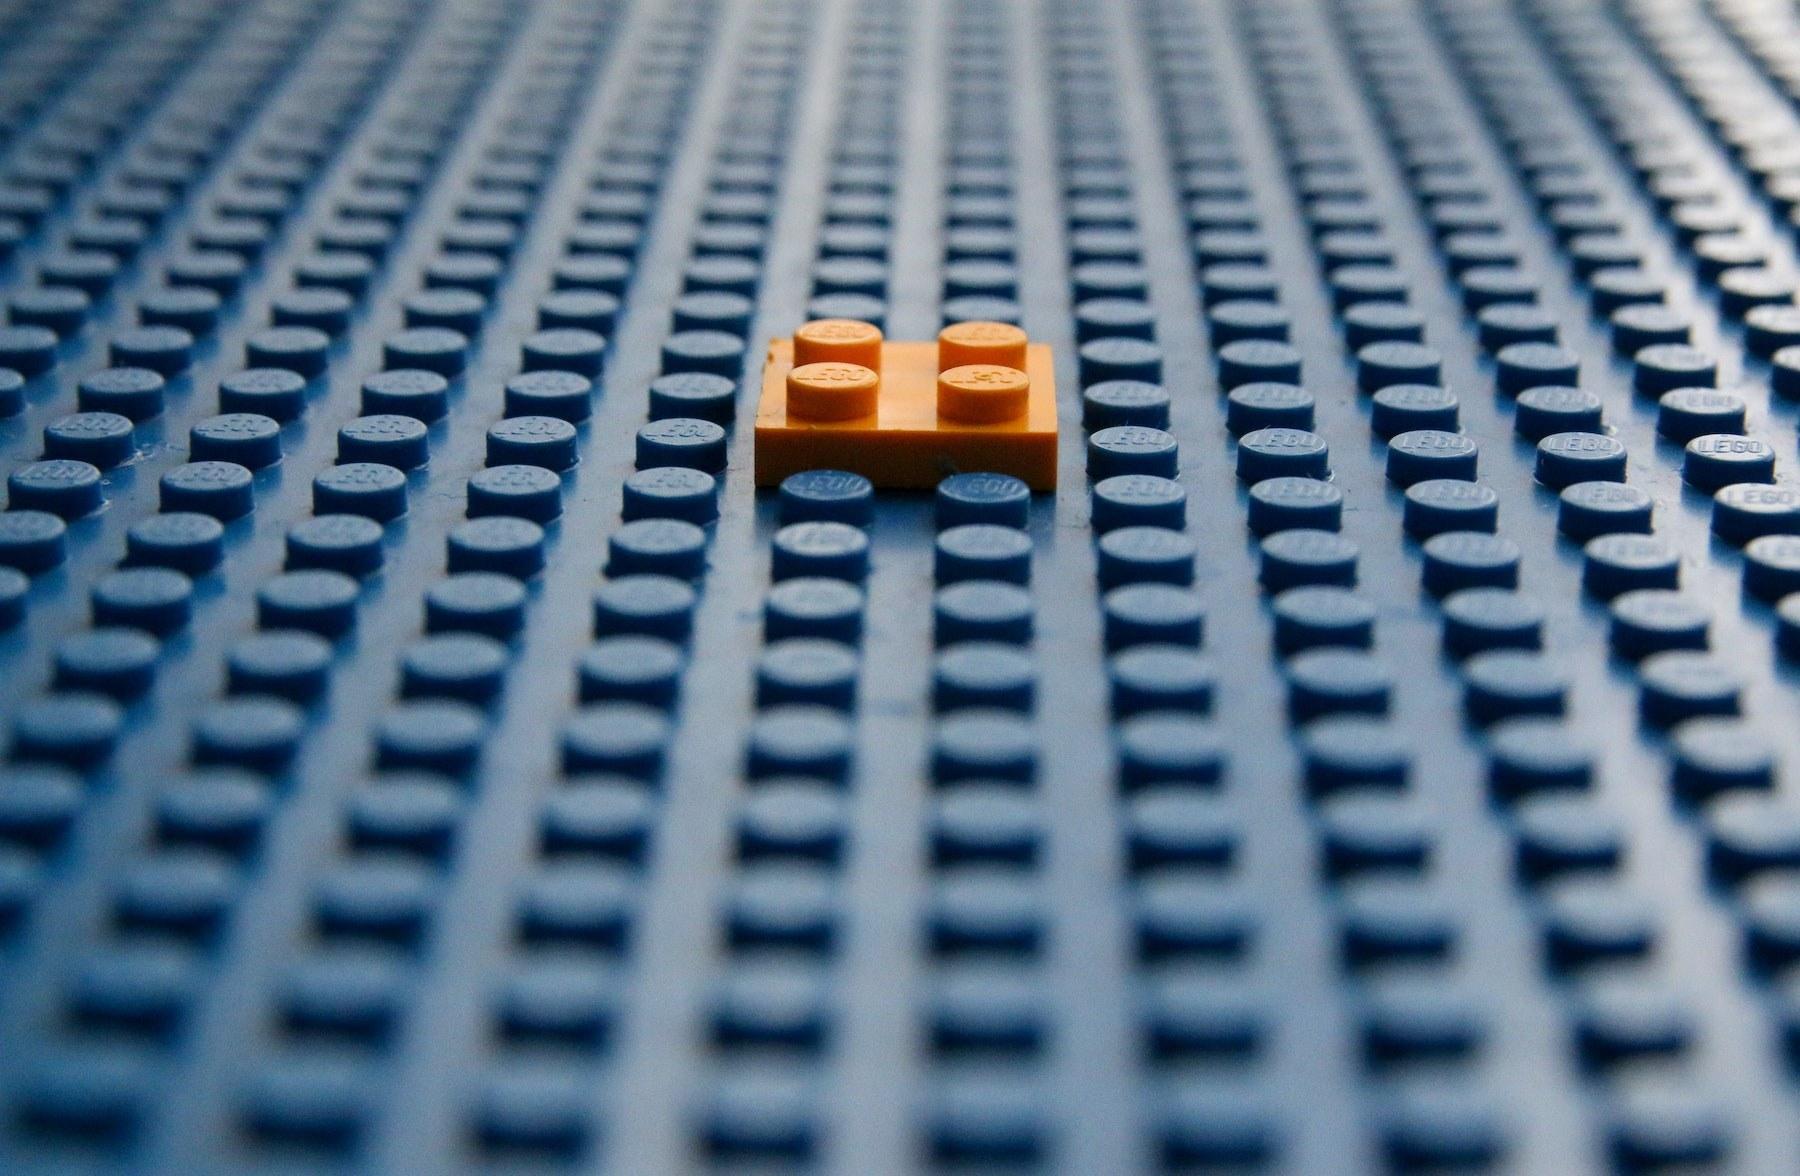 Lego piece